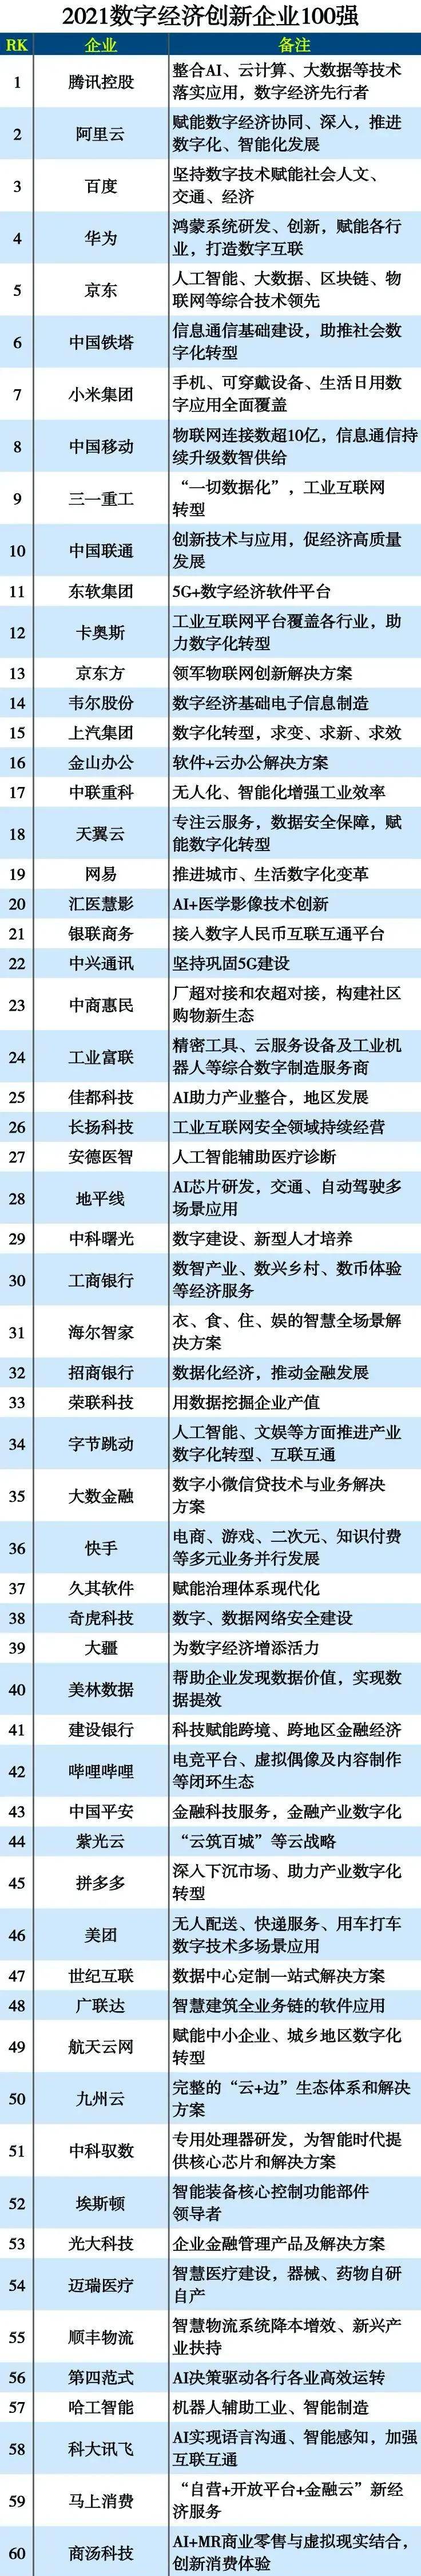 九州云入選2021數字經濟創新企業百強榜！ 